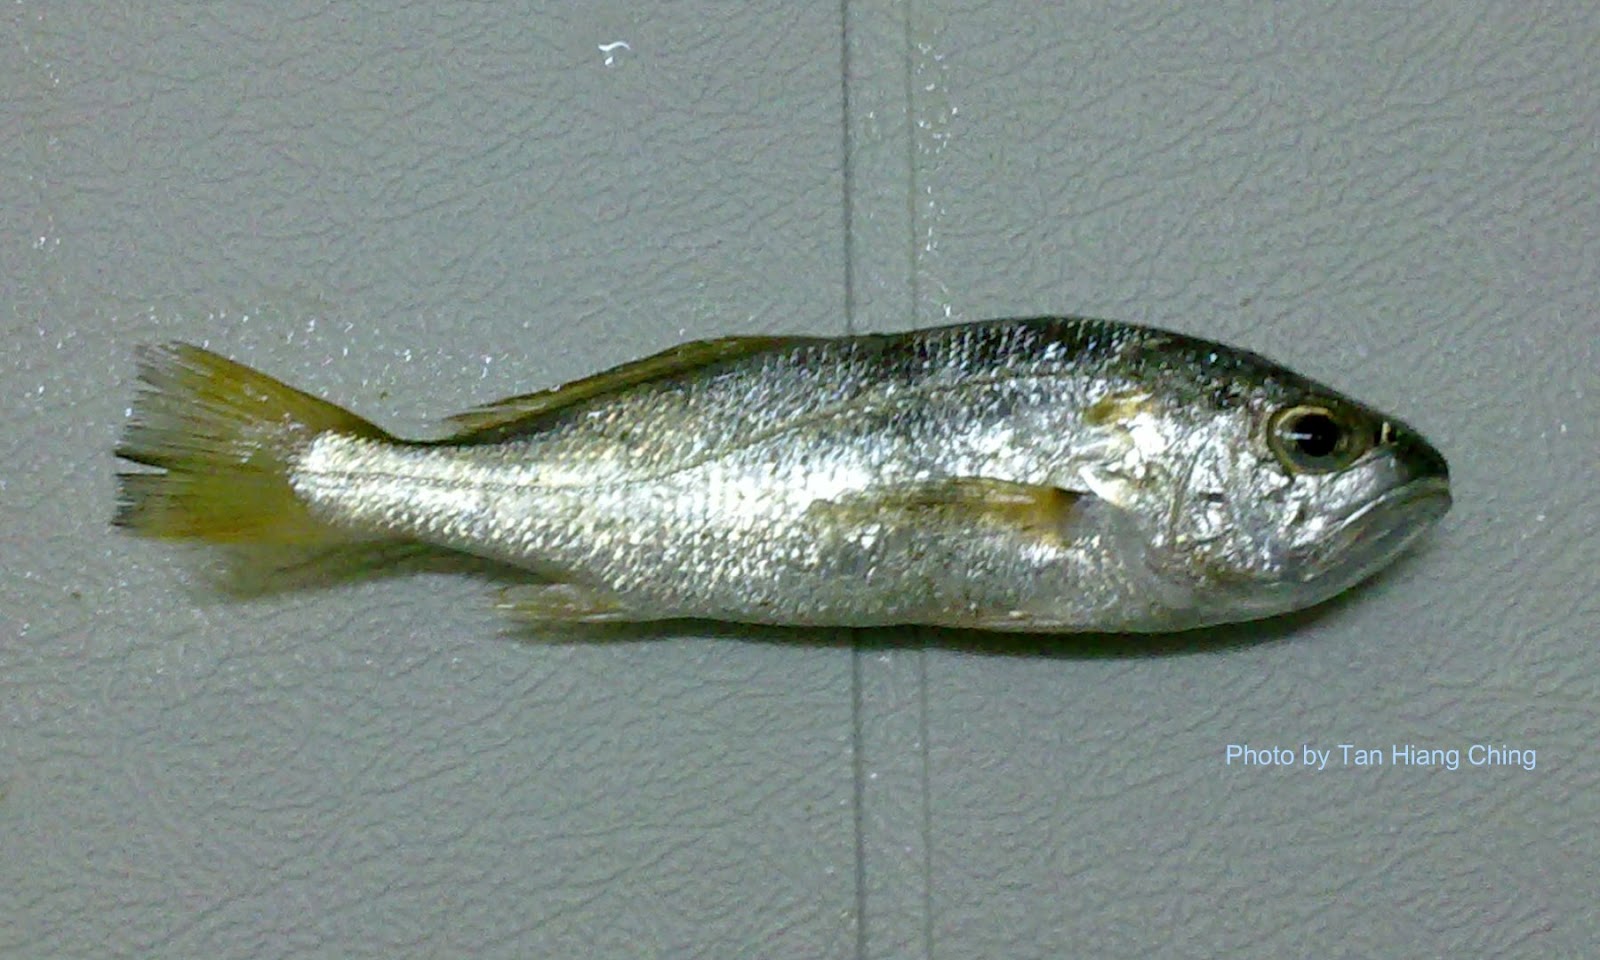 Gelama fish